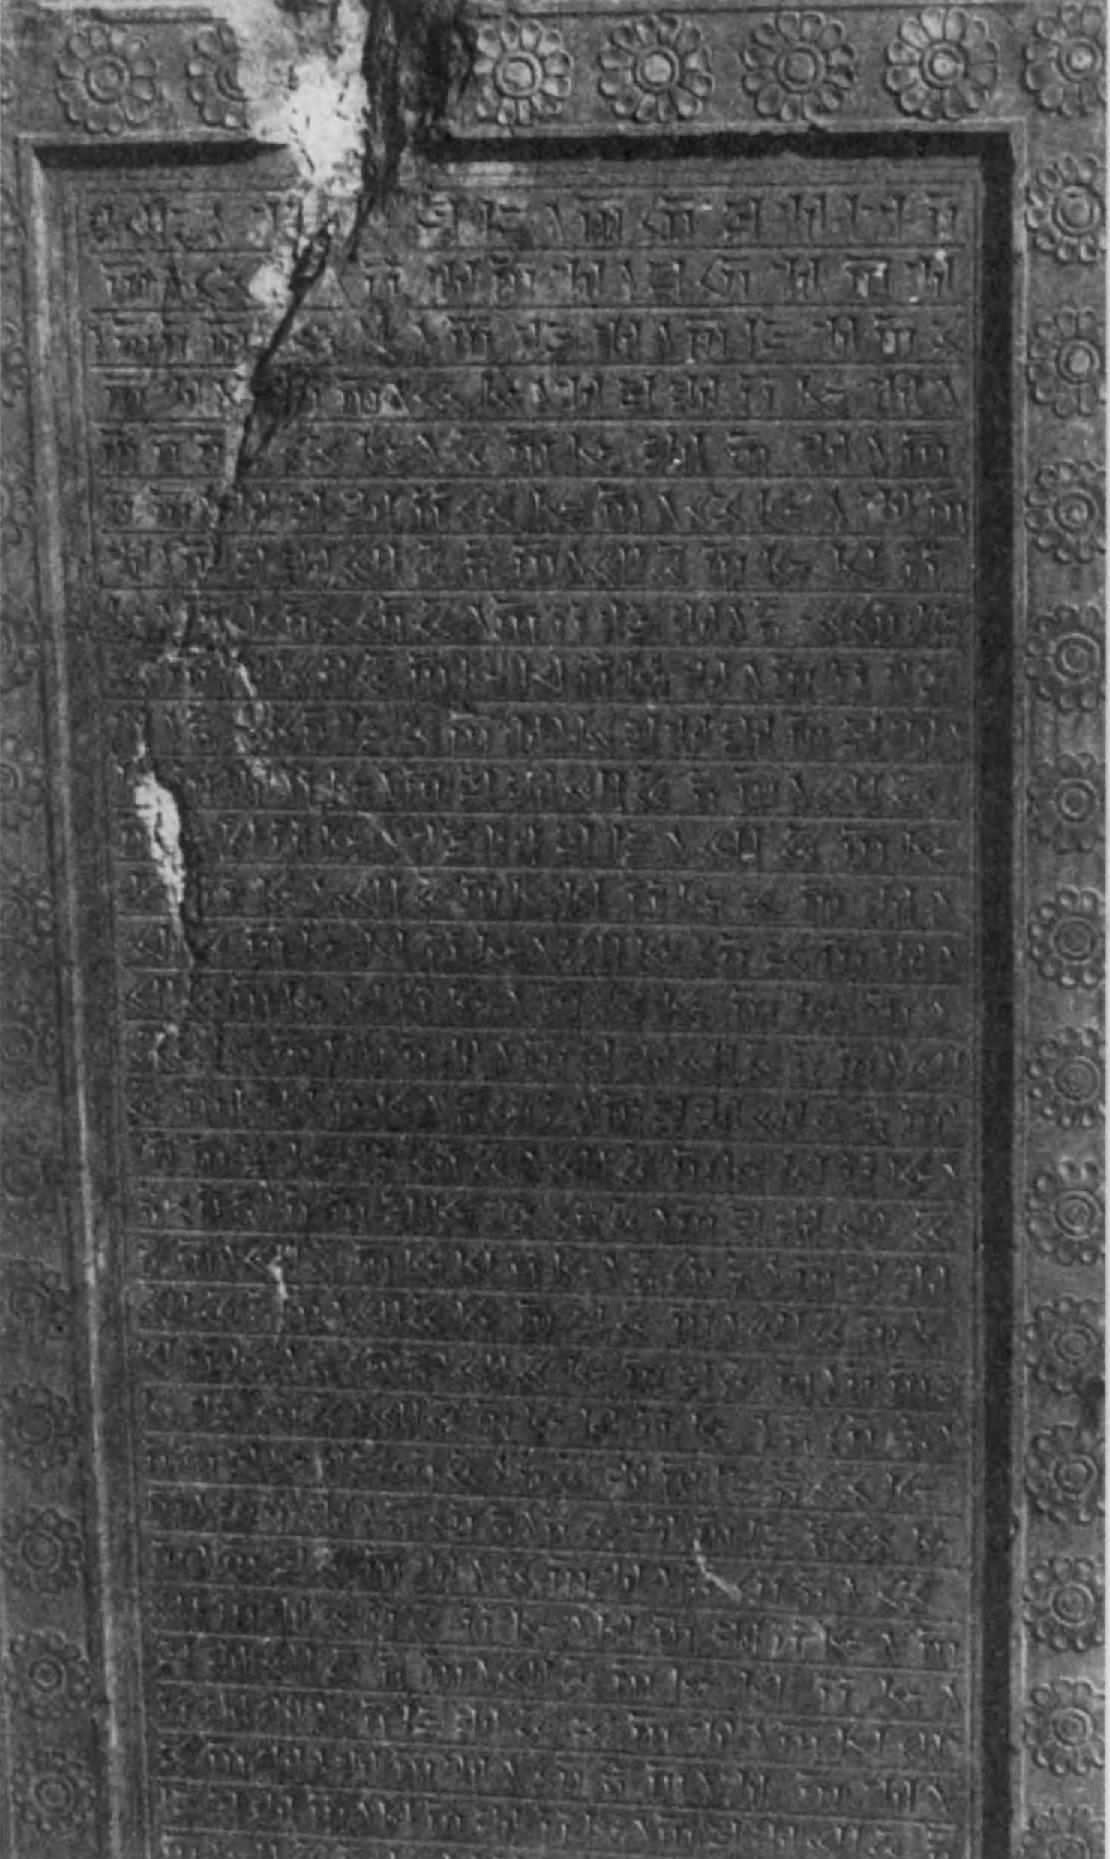 39.	Древнеперсидская надпись из Персеполя царя Артаксеркса III, при котором ахеменидская империя обрела новые силы и вернула себе прежнее могущество.